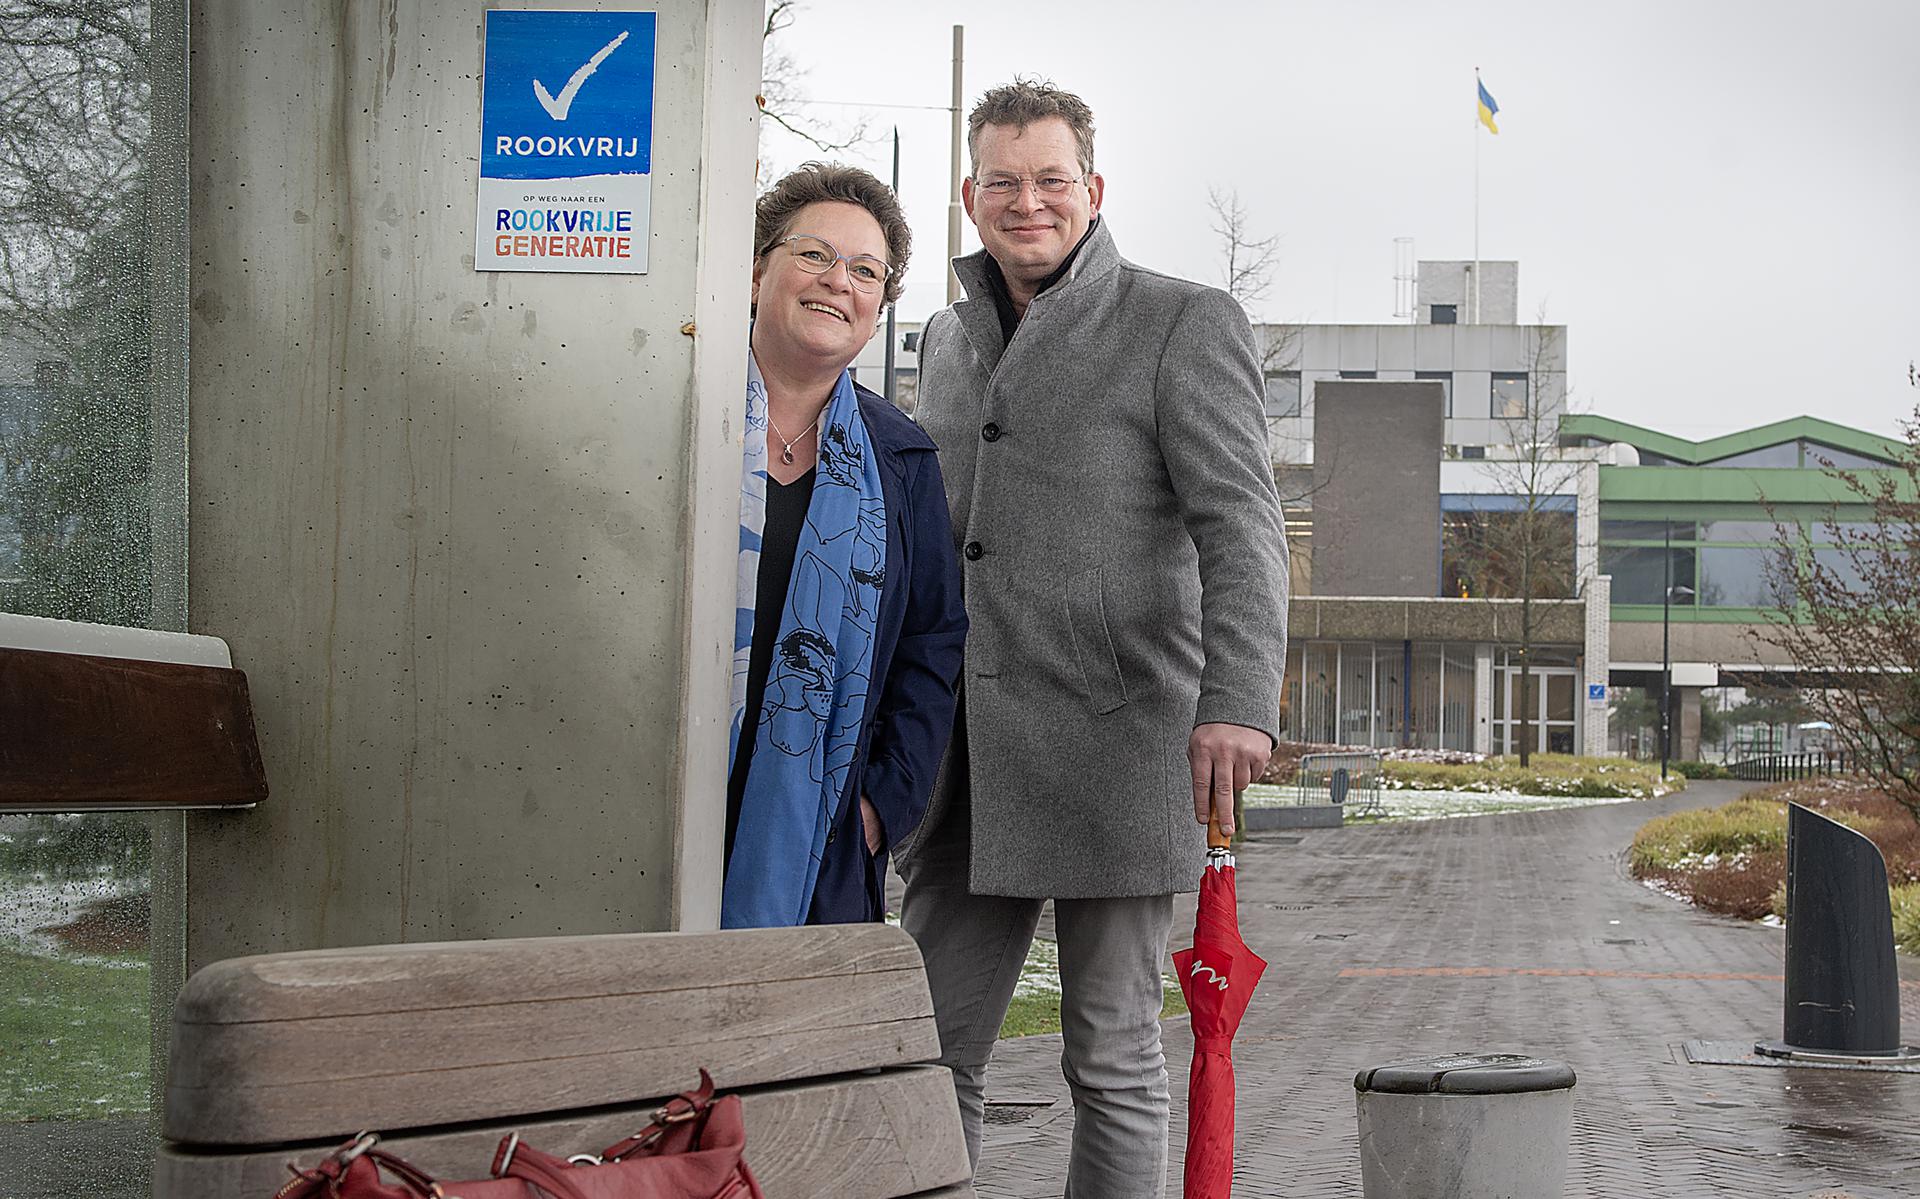 De Drentse gedeputeerde Nelleke Vedelaar en de Emmer wethouder Raymond Wanders bij de eerste rookvrije bushalte in Drenthe. De abri staat in het centrum van Emmen.